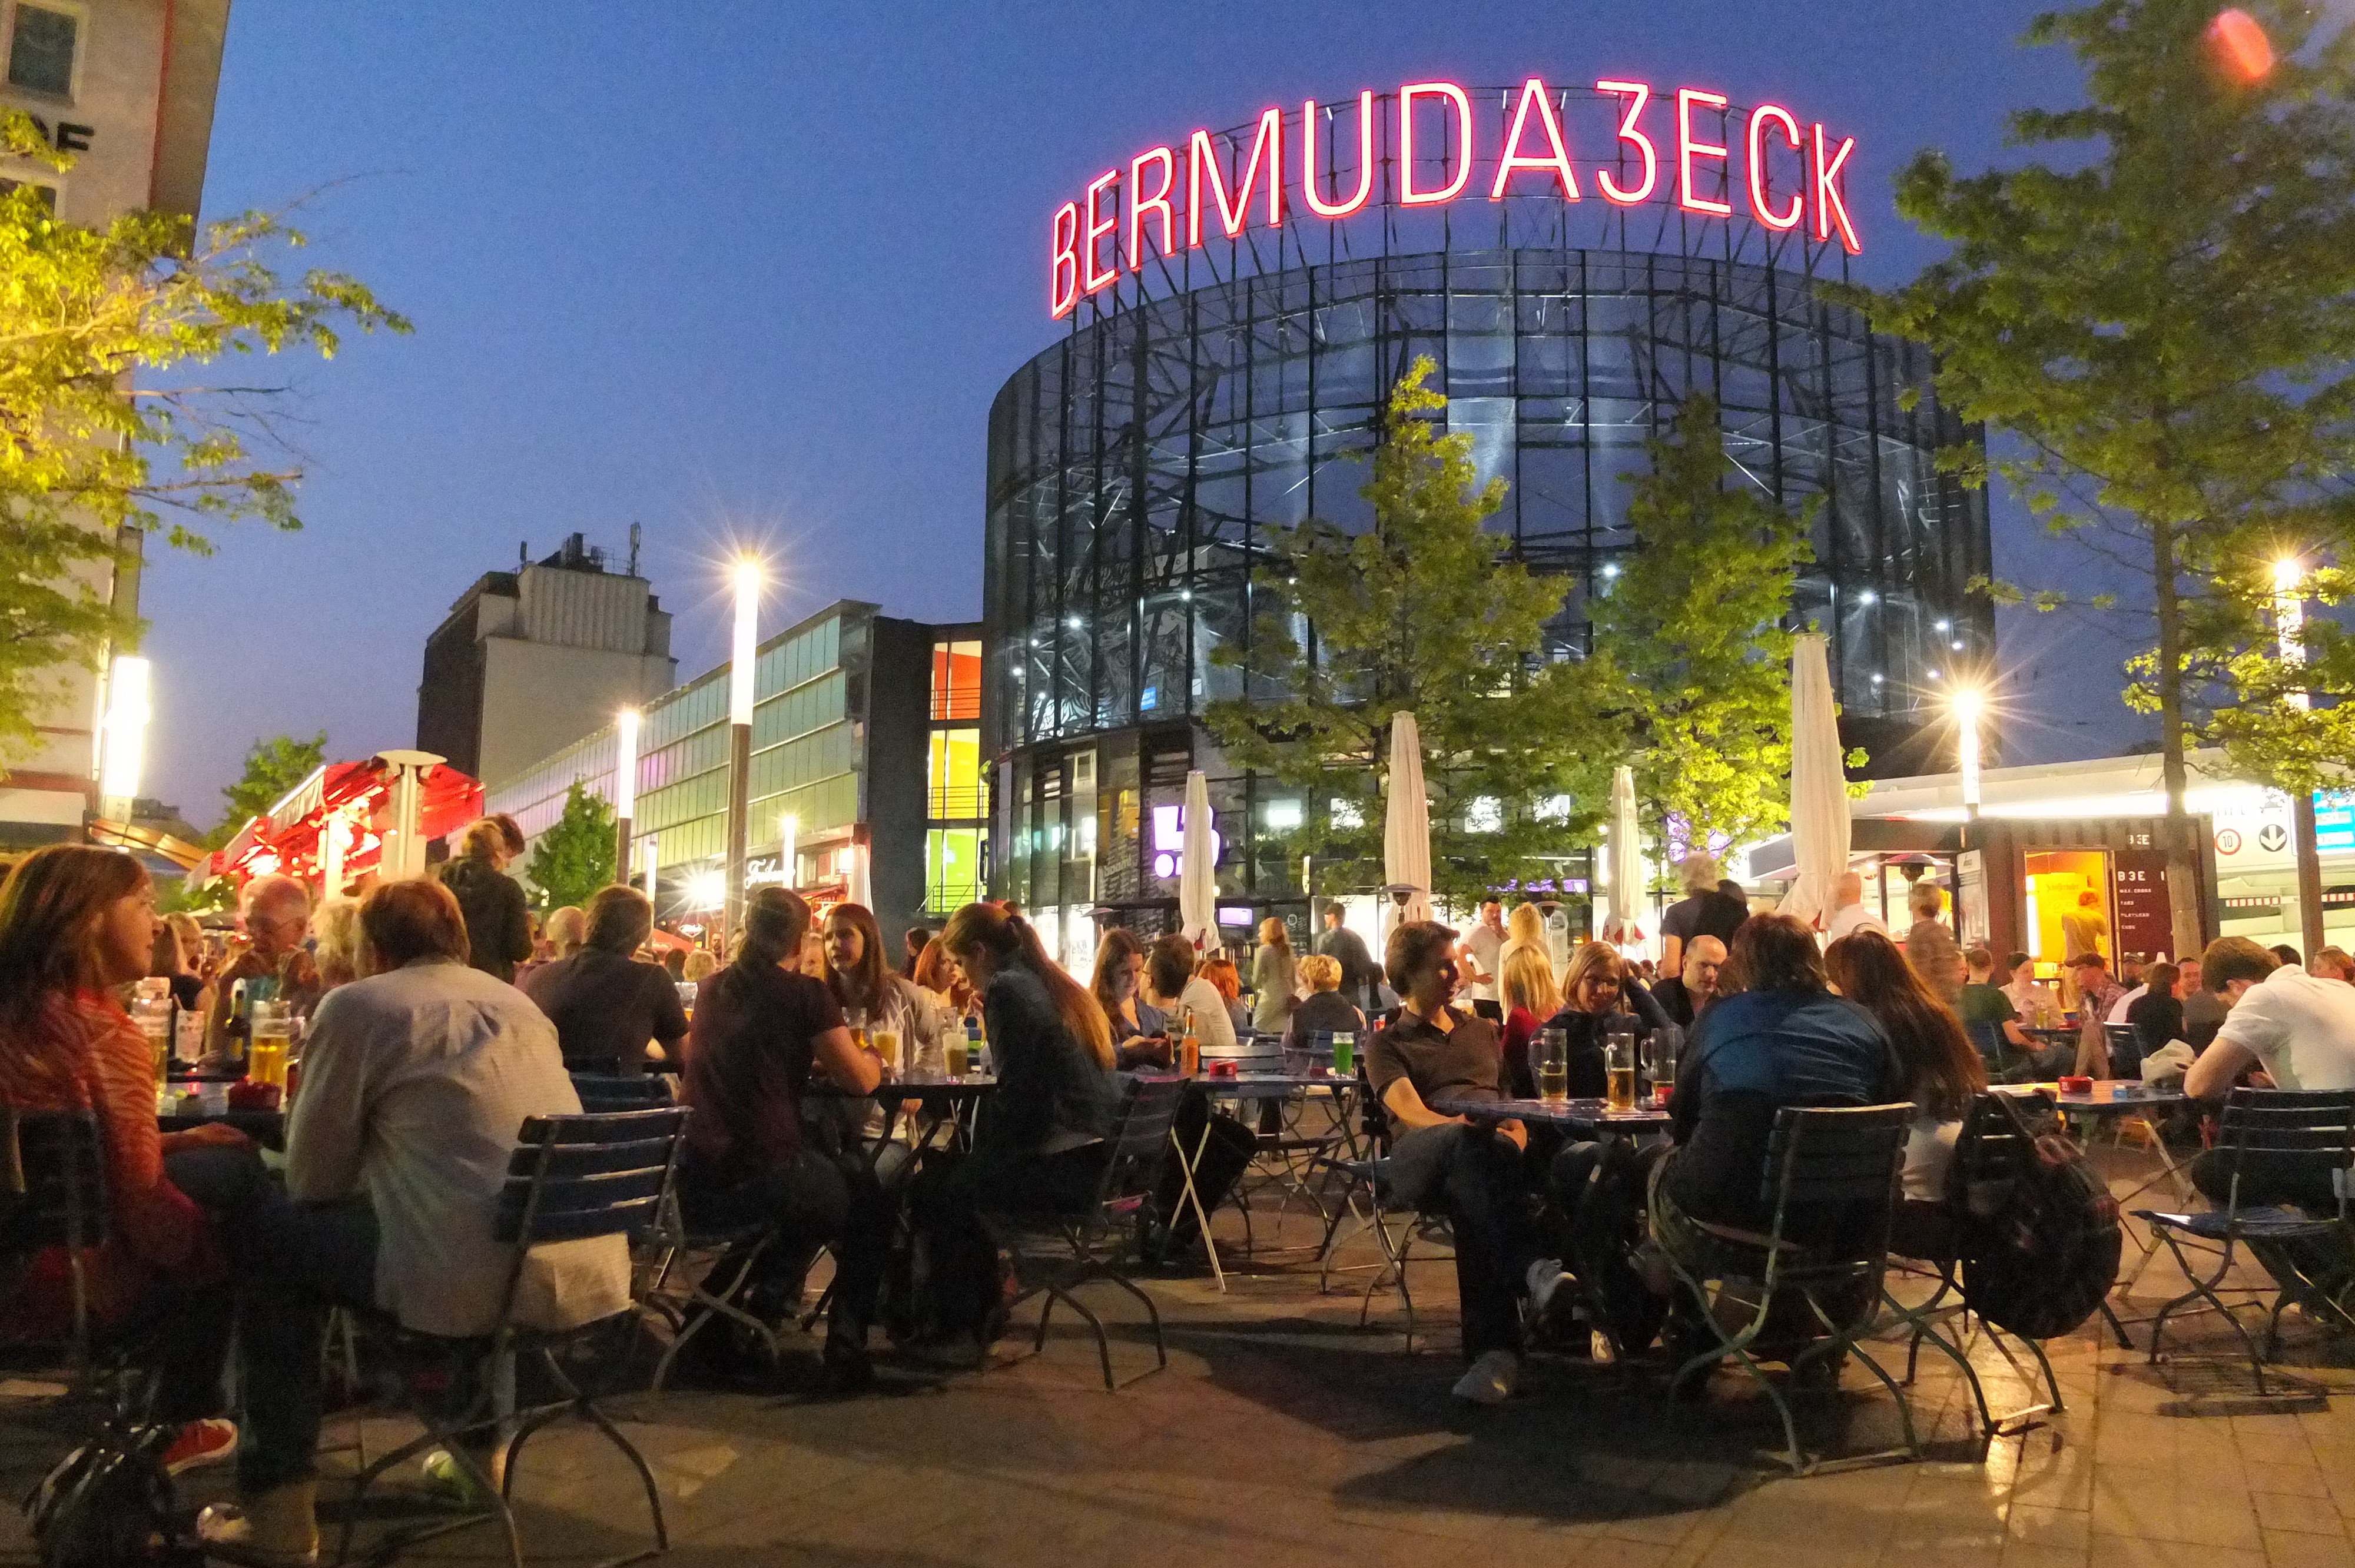 Die Kneipenmeile "Bermudadreieck" in Bochum, aufgenmommen am 07.06.2013. +++ Foto: Lutz Leitmann / Stadt Bochum, Presseamt